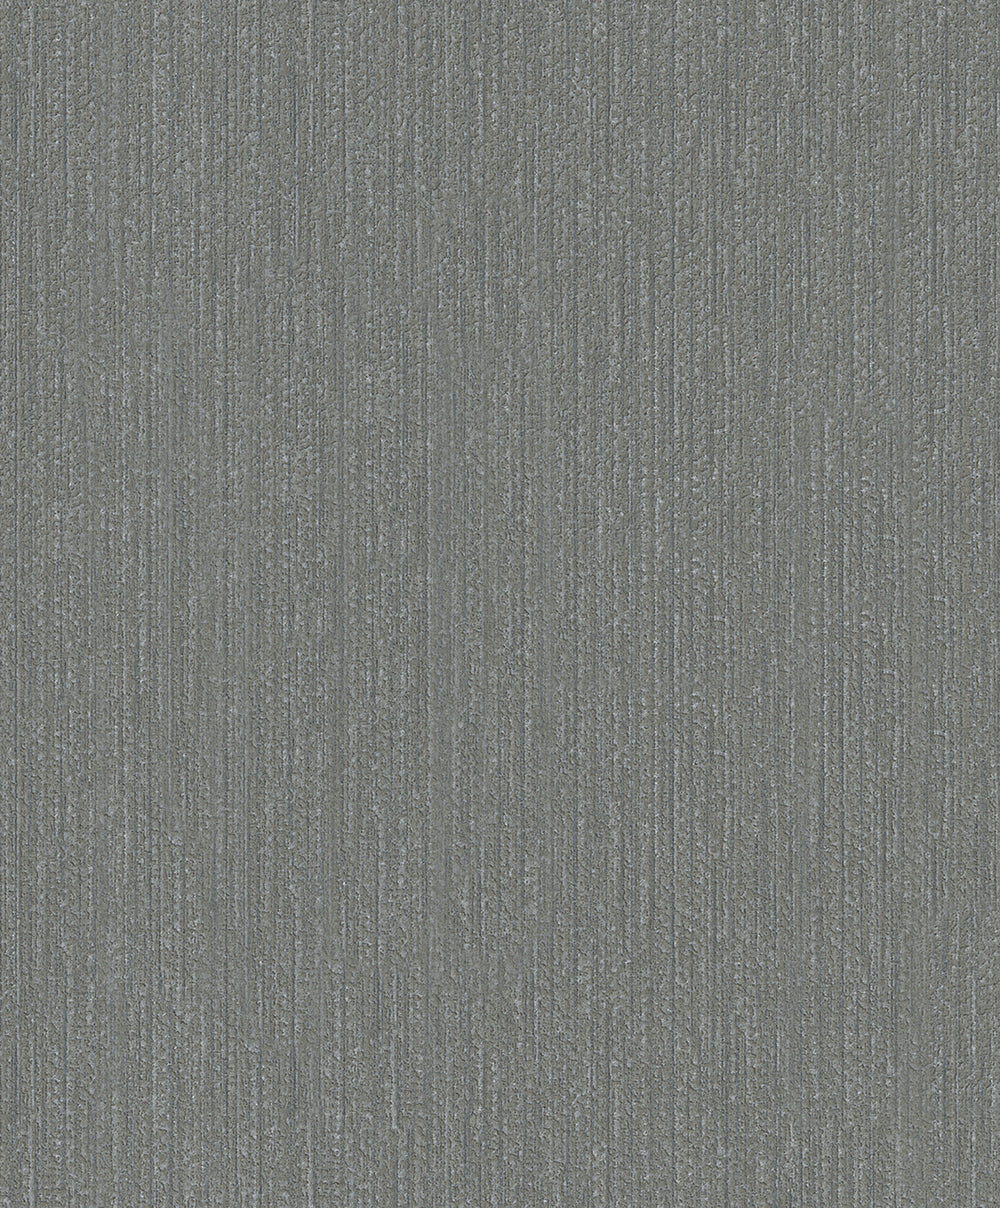 Schoner Wohnen New Spirit - Ambient bamboo weave plain wallpaper Marburg Roll Dark grey  32739